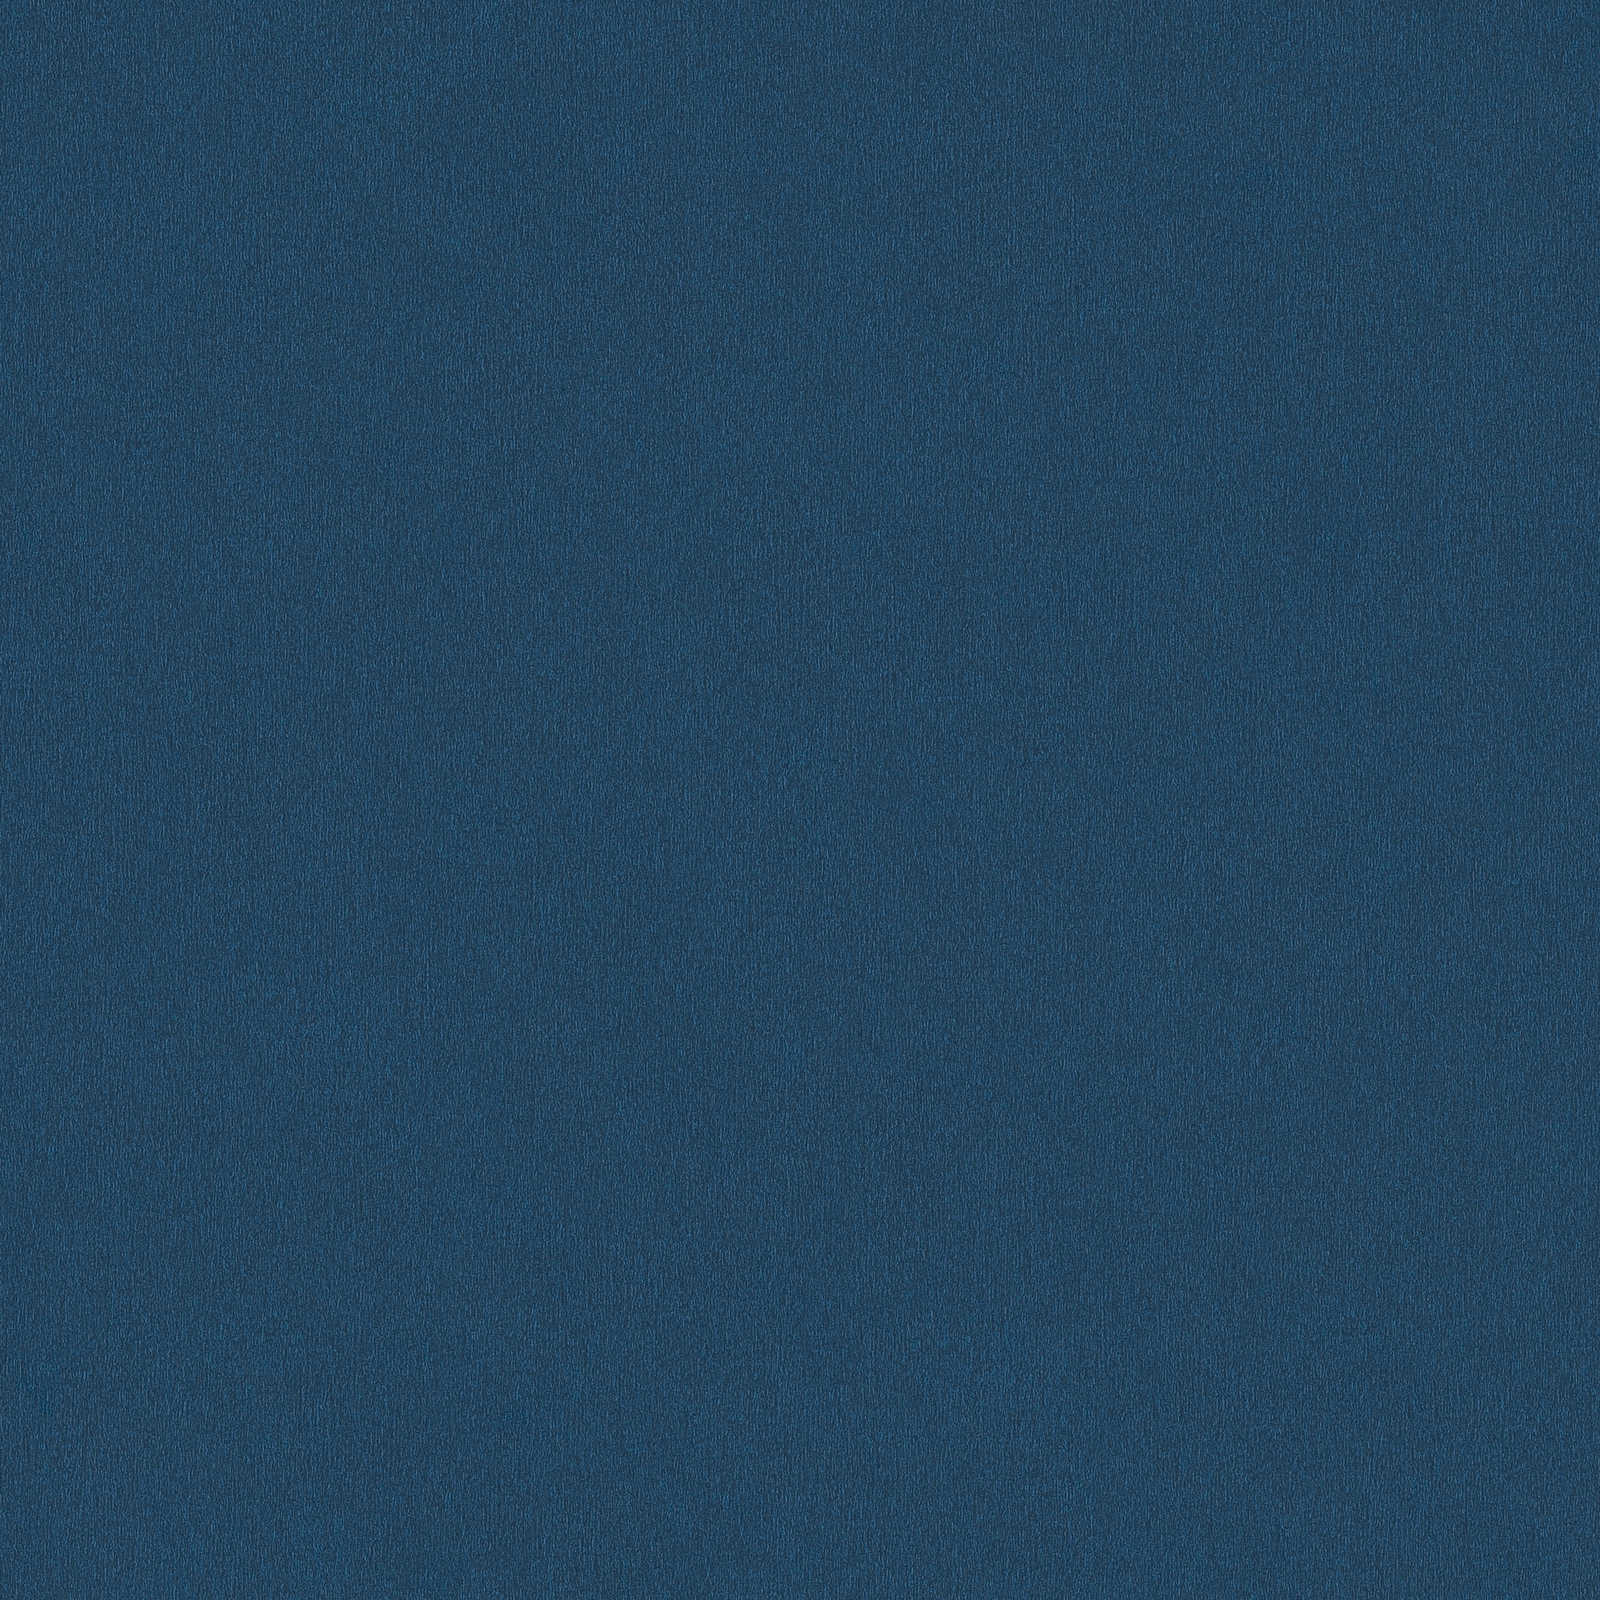 behang donkerblauw, effen marineblauw met kleur arceringen
